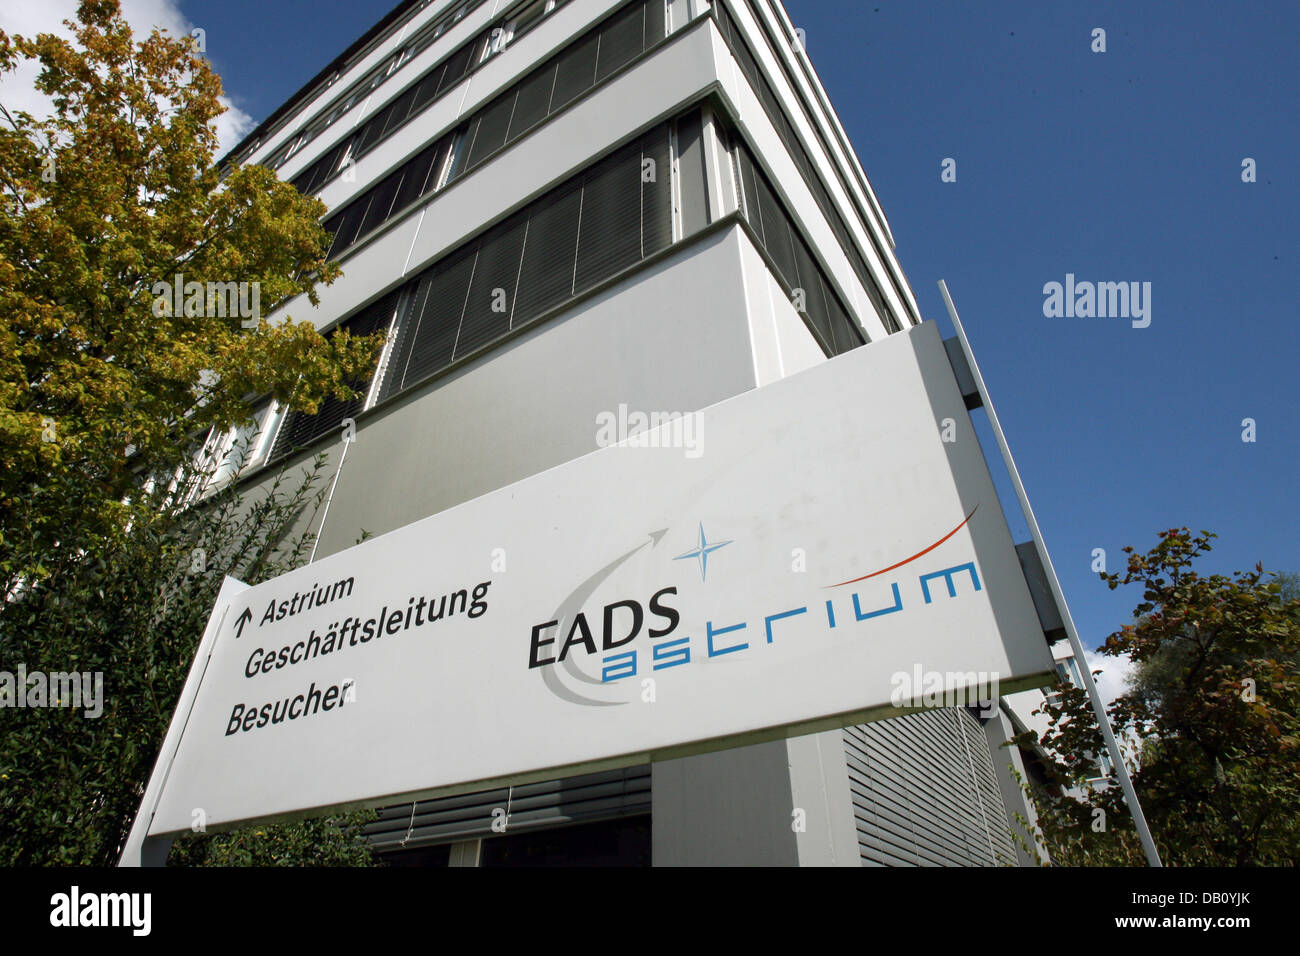 La pancarte d'EADS Astrium en photo au siège de la société à Friedrichshafen, Allemagne, 19 septembre 2007. EADS Astrium est une filiale d'EADS (European Aeronautic Defence and Space Company), un leader mondial de l'aéronautique, de la défense et des services associés. Photo : Patrick Seeger Banque D'Images